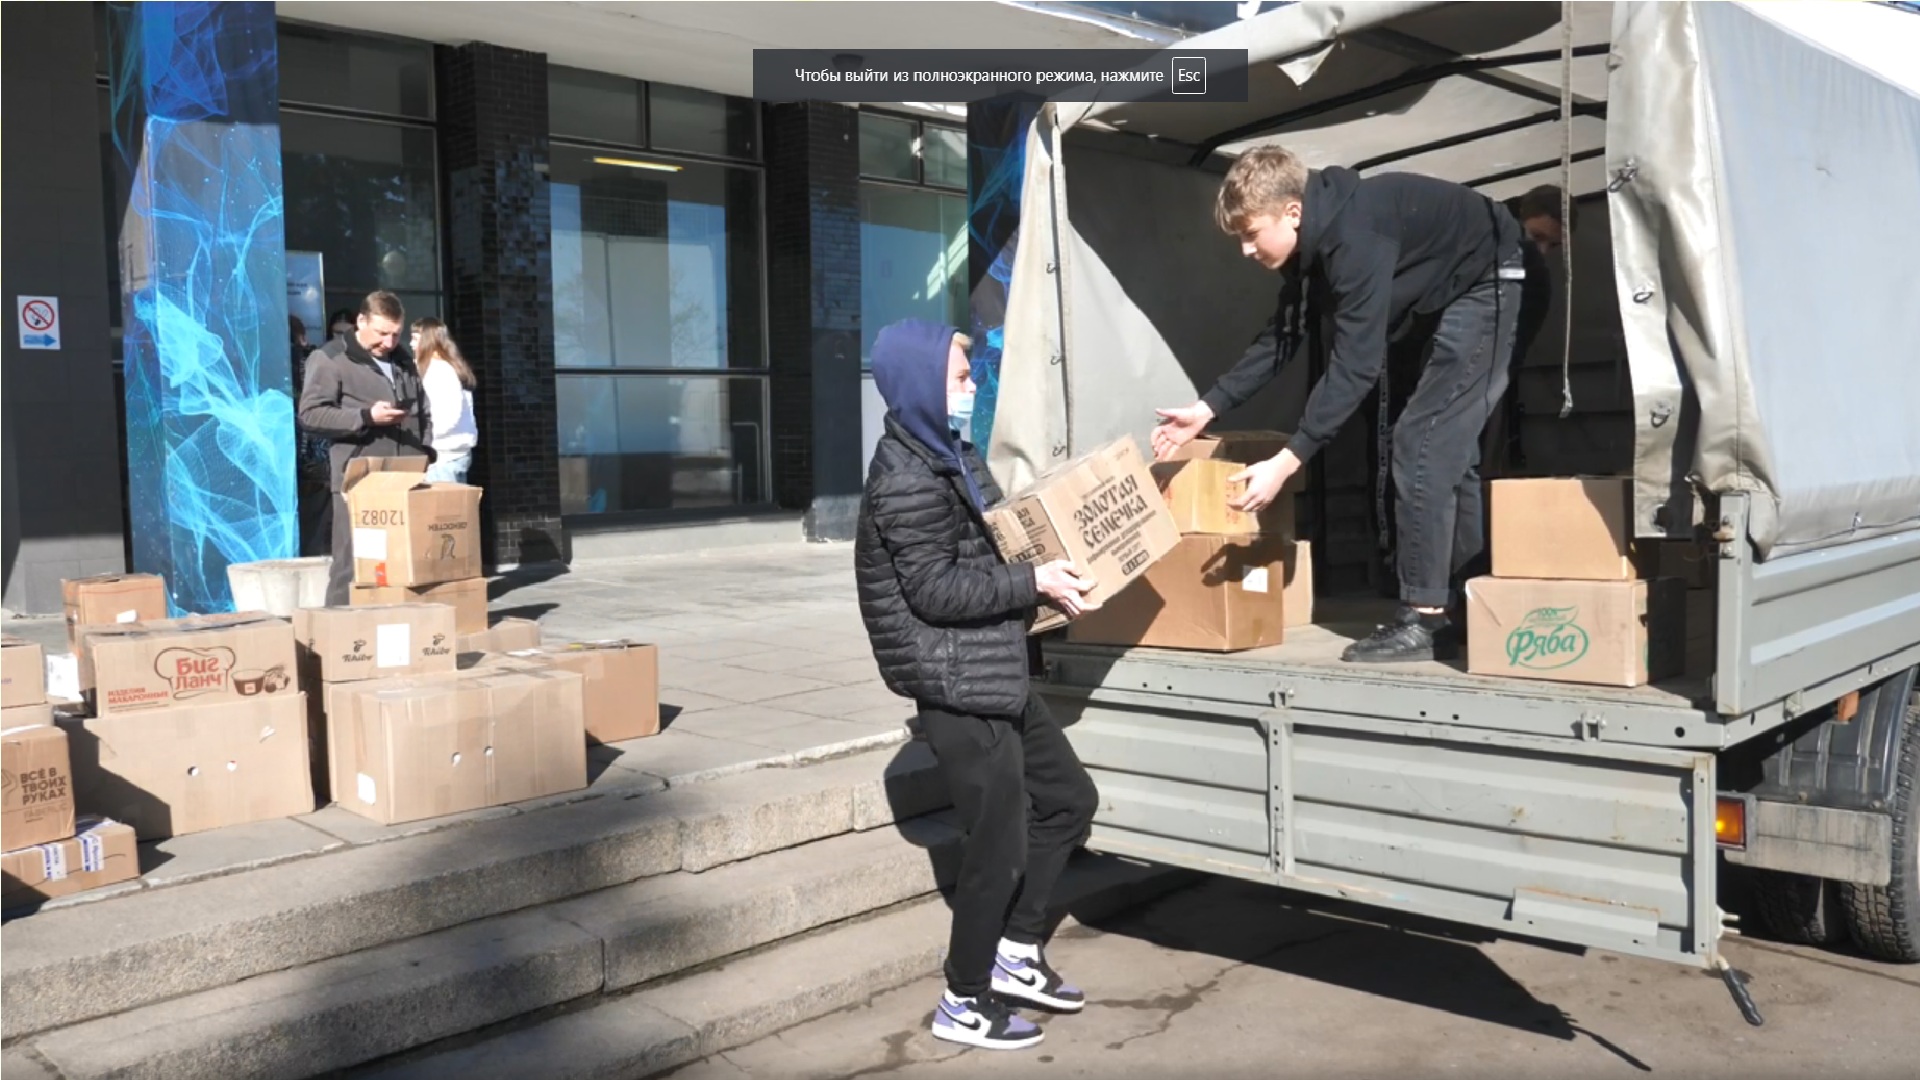 Почти девять тонн гуманитарной помощи для жителей Добасса собрали в Ярославле за неделю